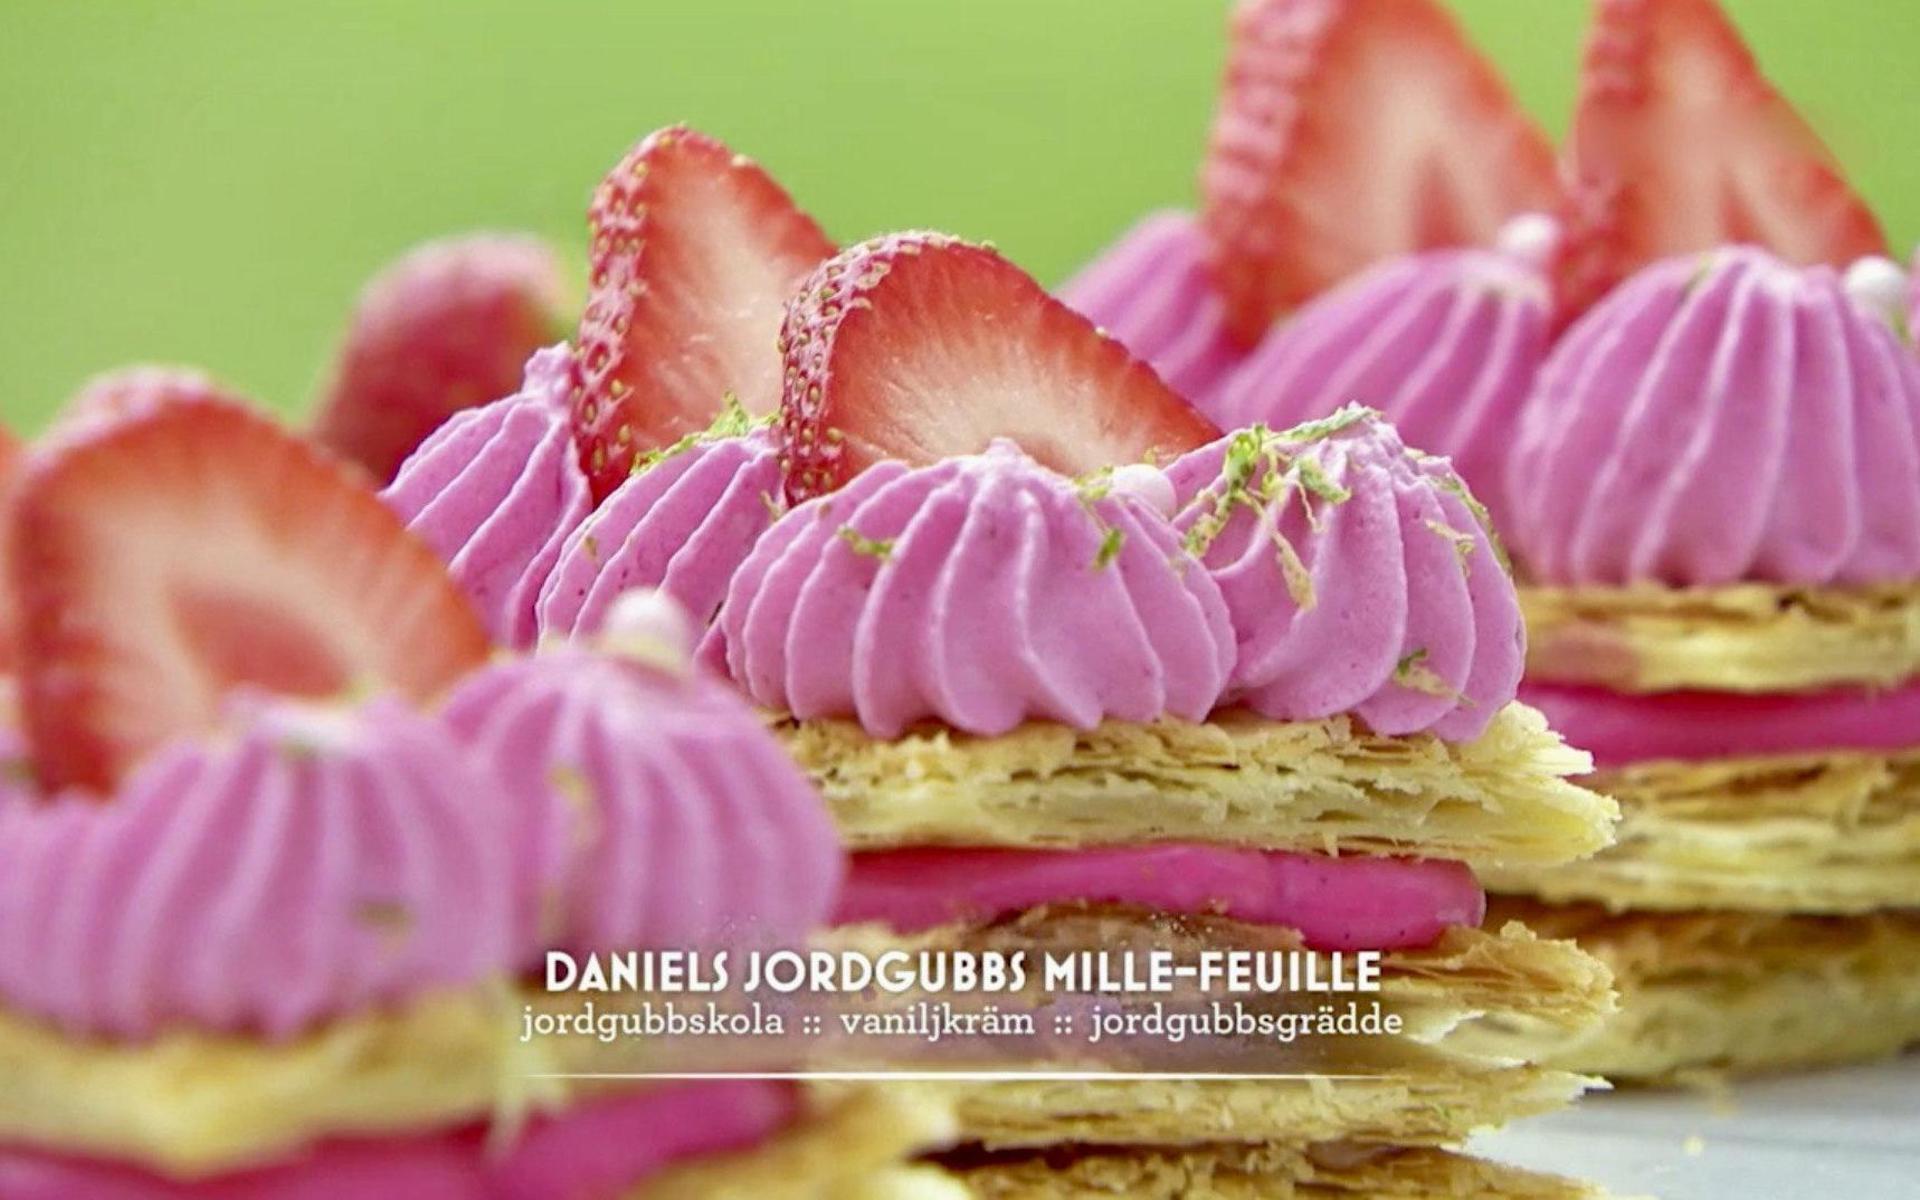 Daniel Pettersson gjorde mille-feuille av smördeg, med fyllning med jordgubbskola och vaniljkräm, toppat med jordgubbar och jordgubbsgrädde.